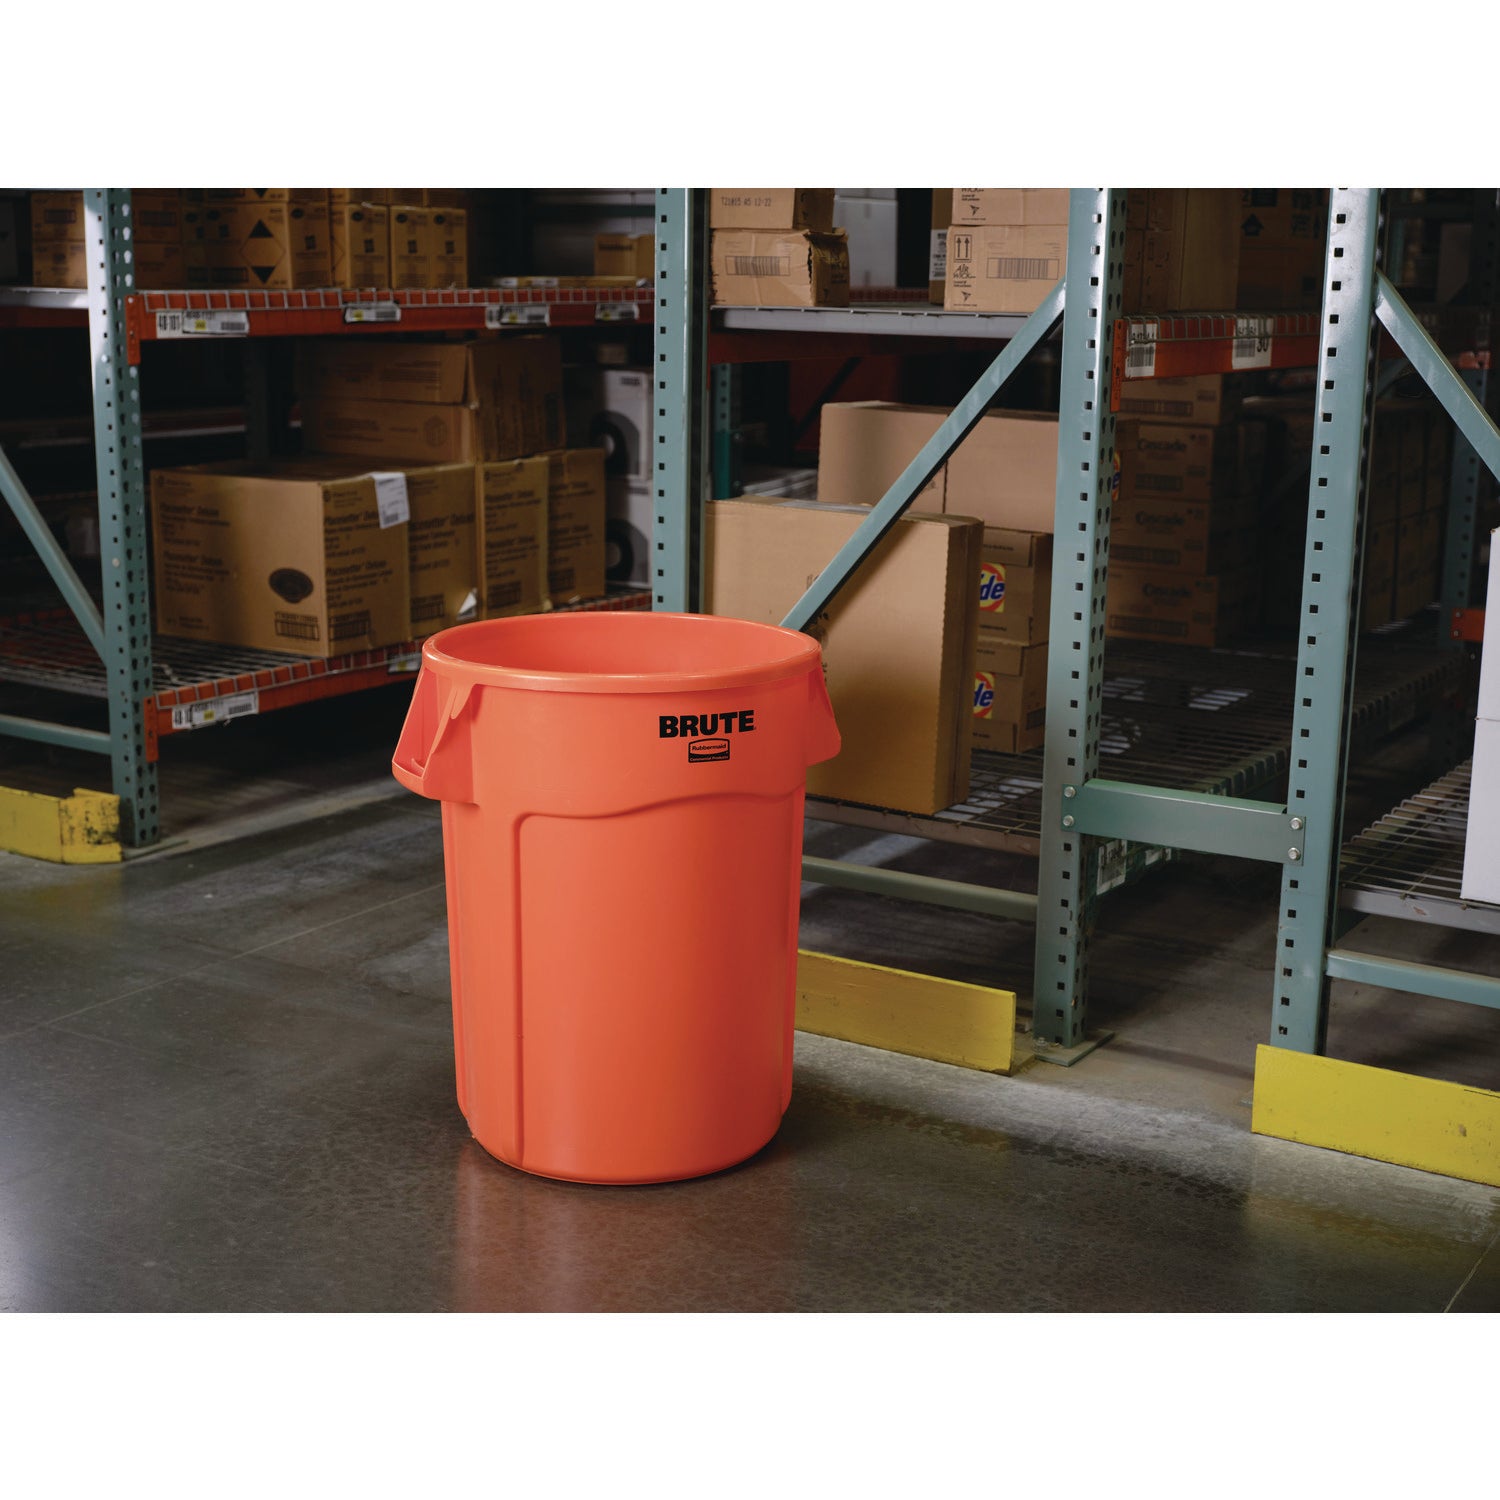 Brute Round Container, 32 gal, Resin, Orange - 3